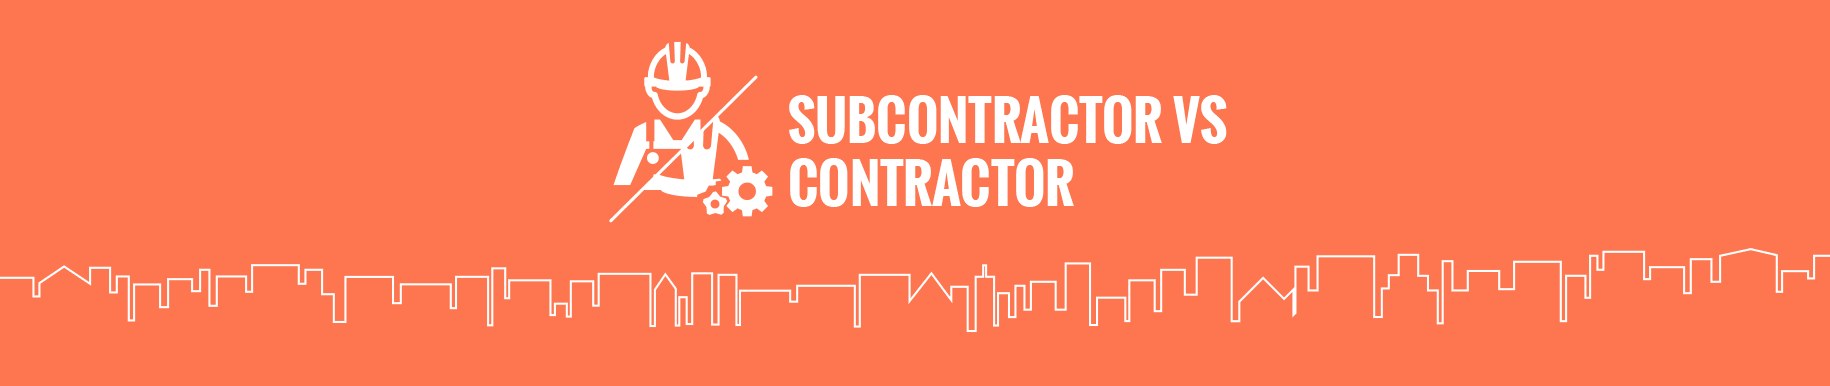 subcontractor vs contractor